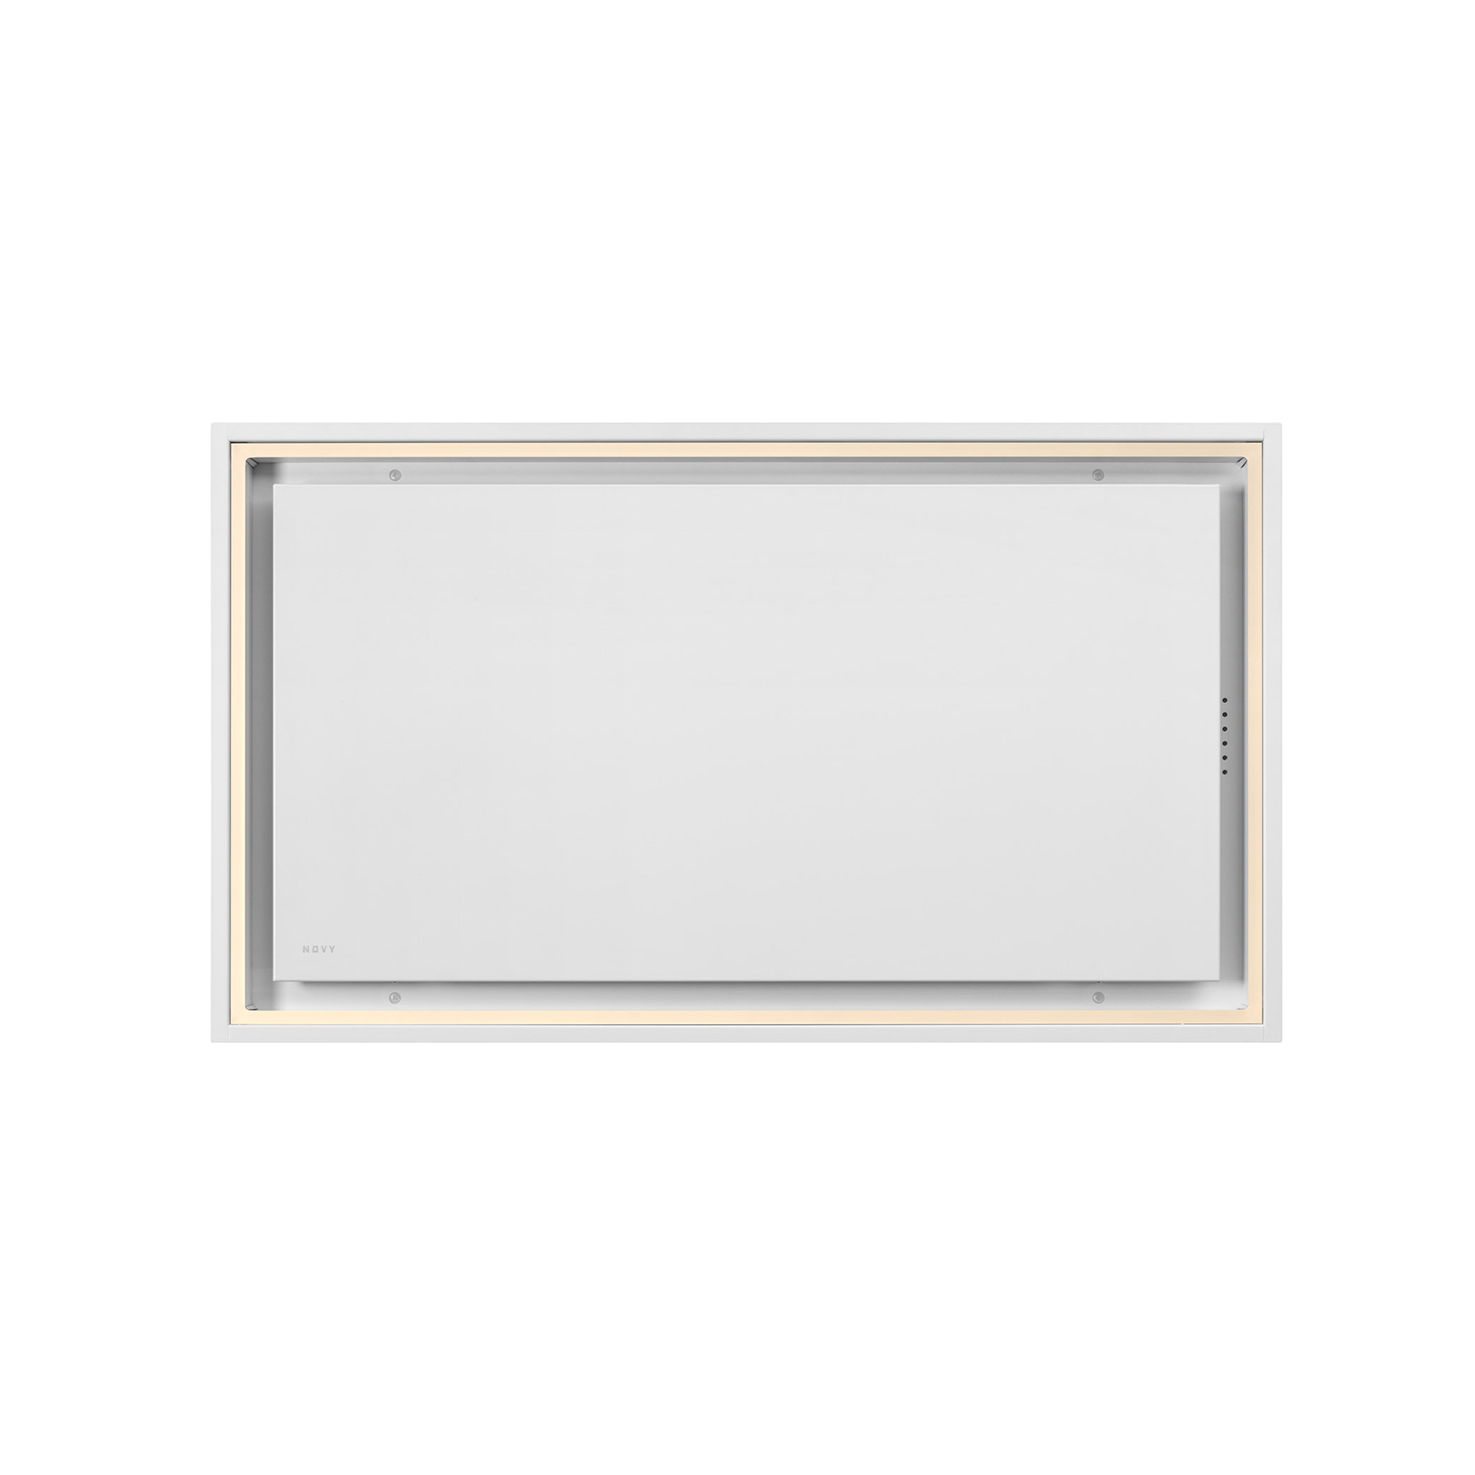 6911 Deckenhaube Pureline Pro Compact  Weiß 